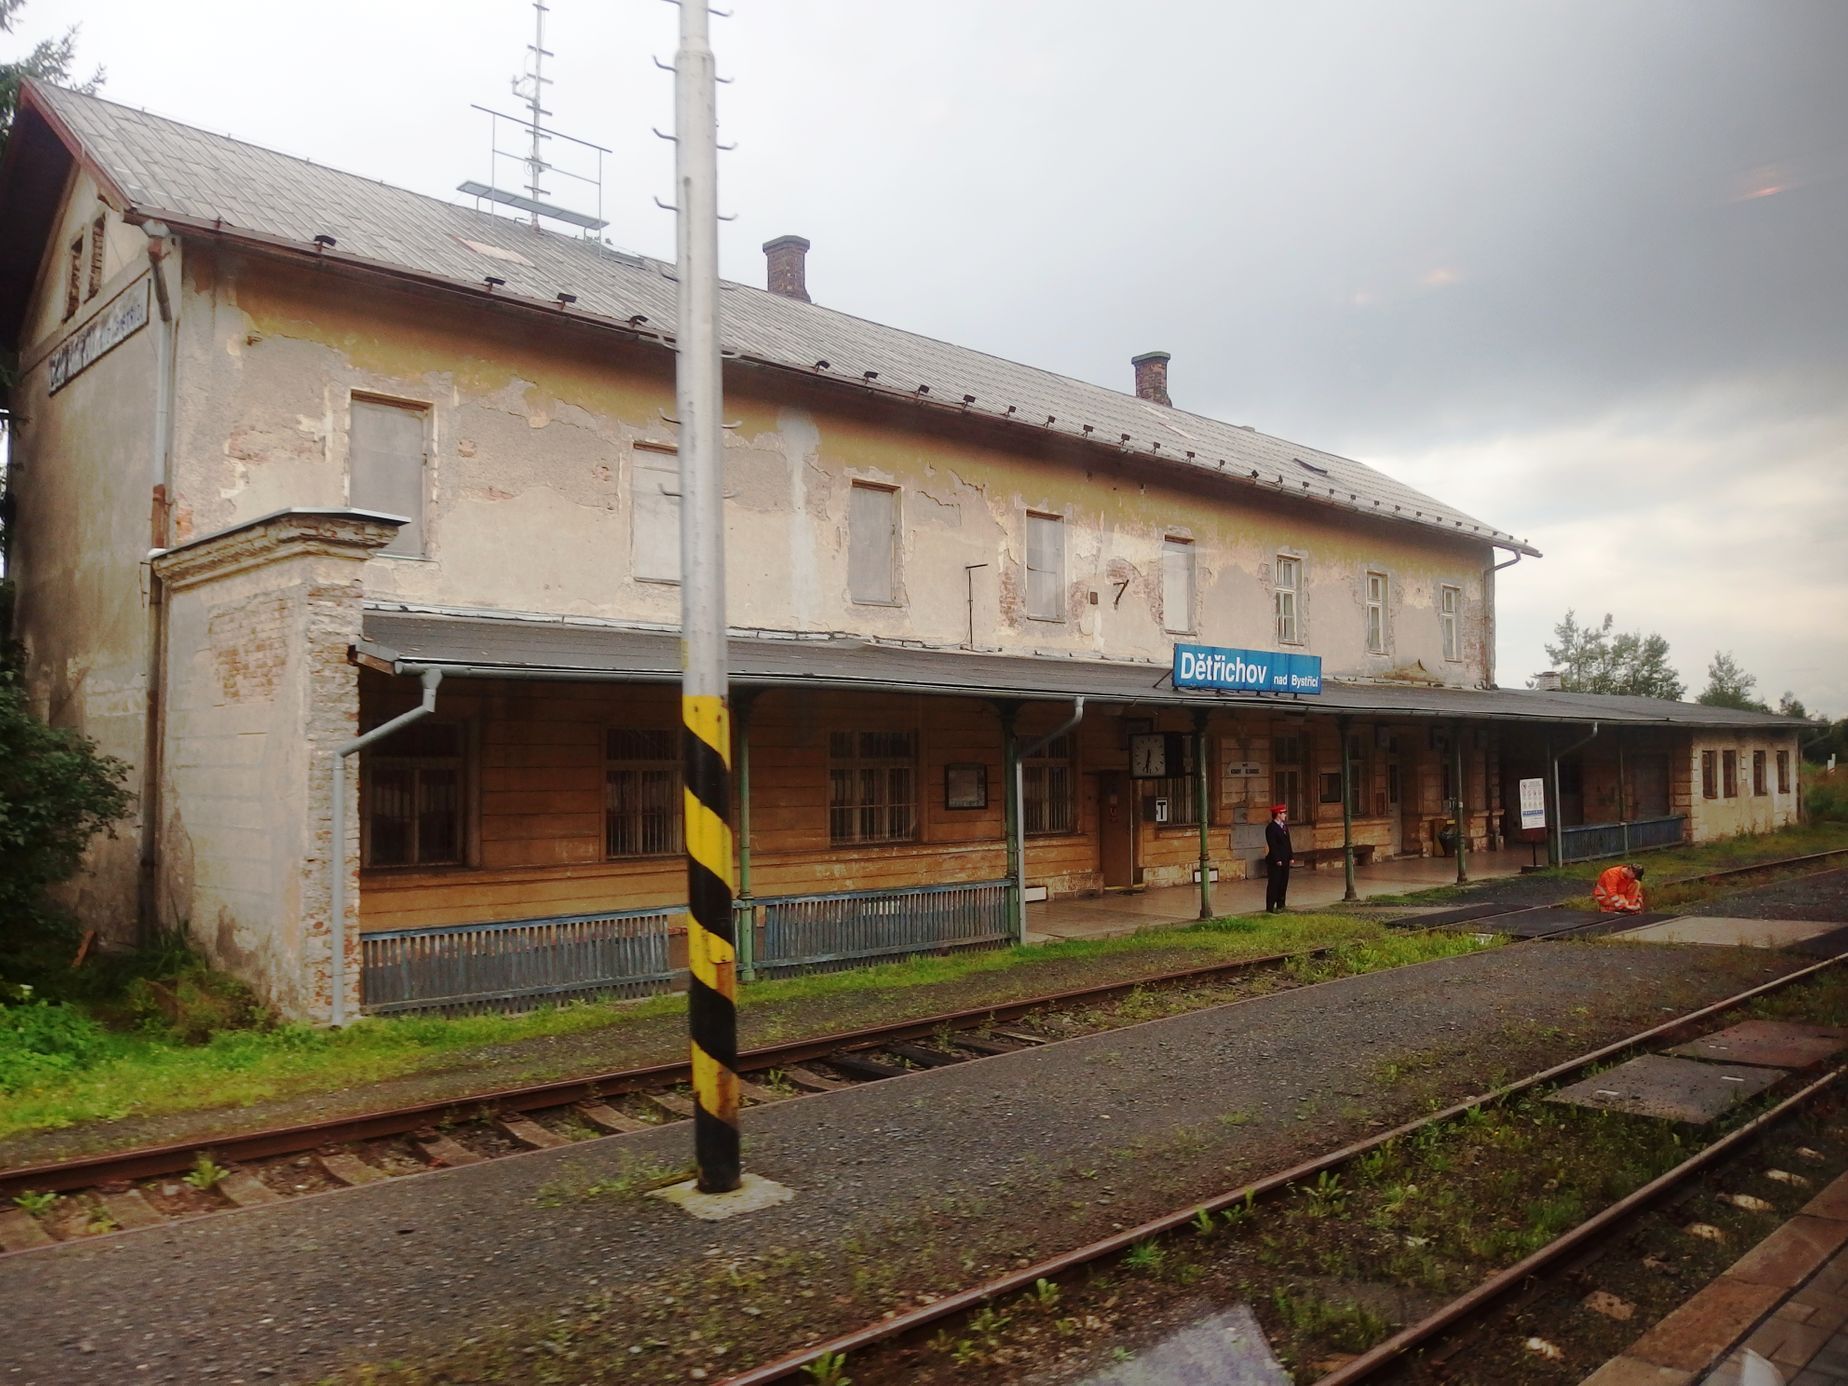 Železniční stanice Dětřichov nad Bystřicí